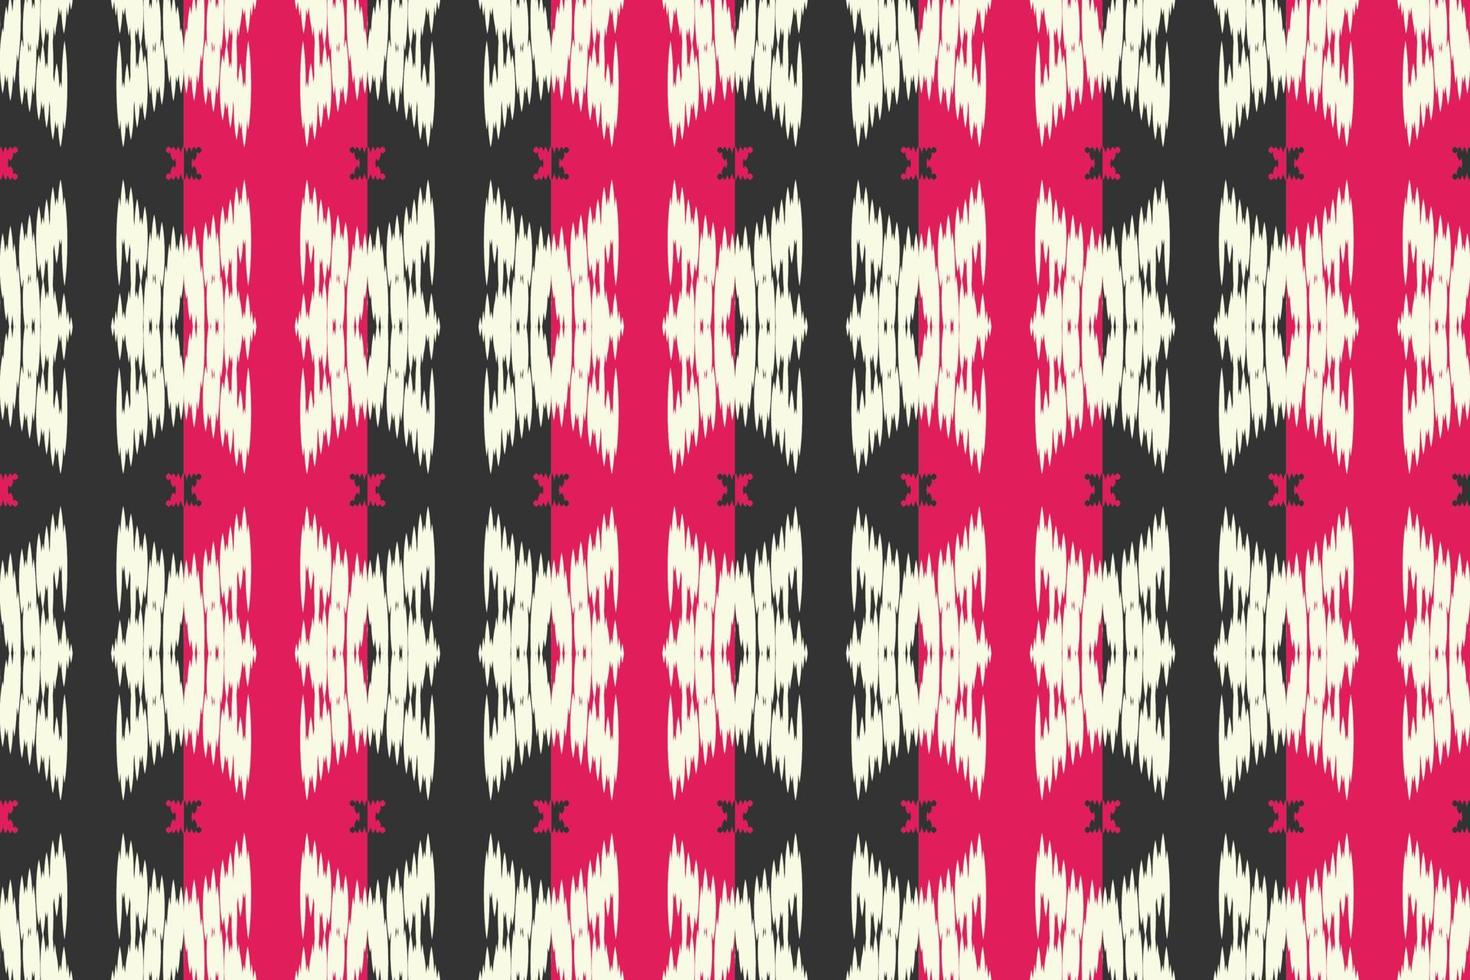 Motif ikat diamond tribal abstract Borneo Scandinavian Batik bohemian texture digital vector design for Print saree kurti Fabric brush symbols swatches